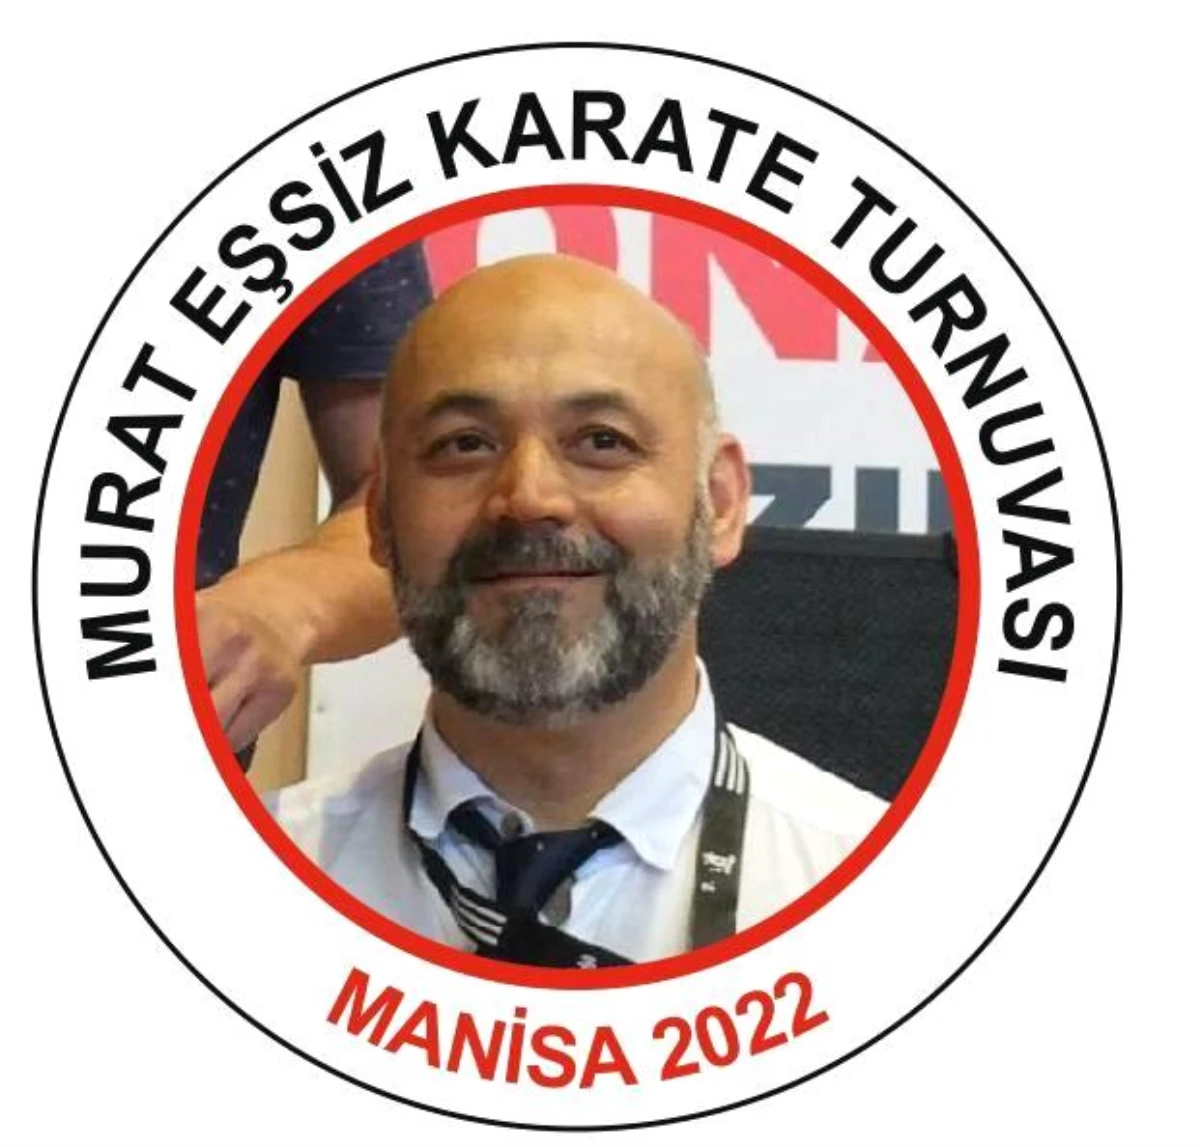 Manisa\'da Murat Eşsiz anısına karate turnuvası düzenlenecek